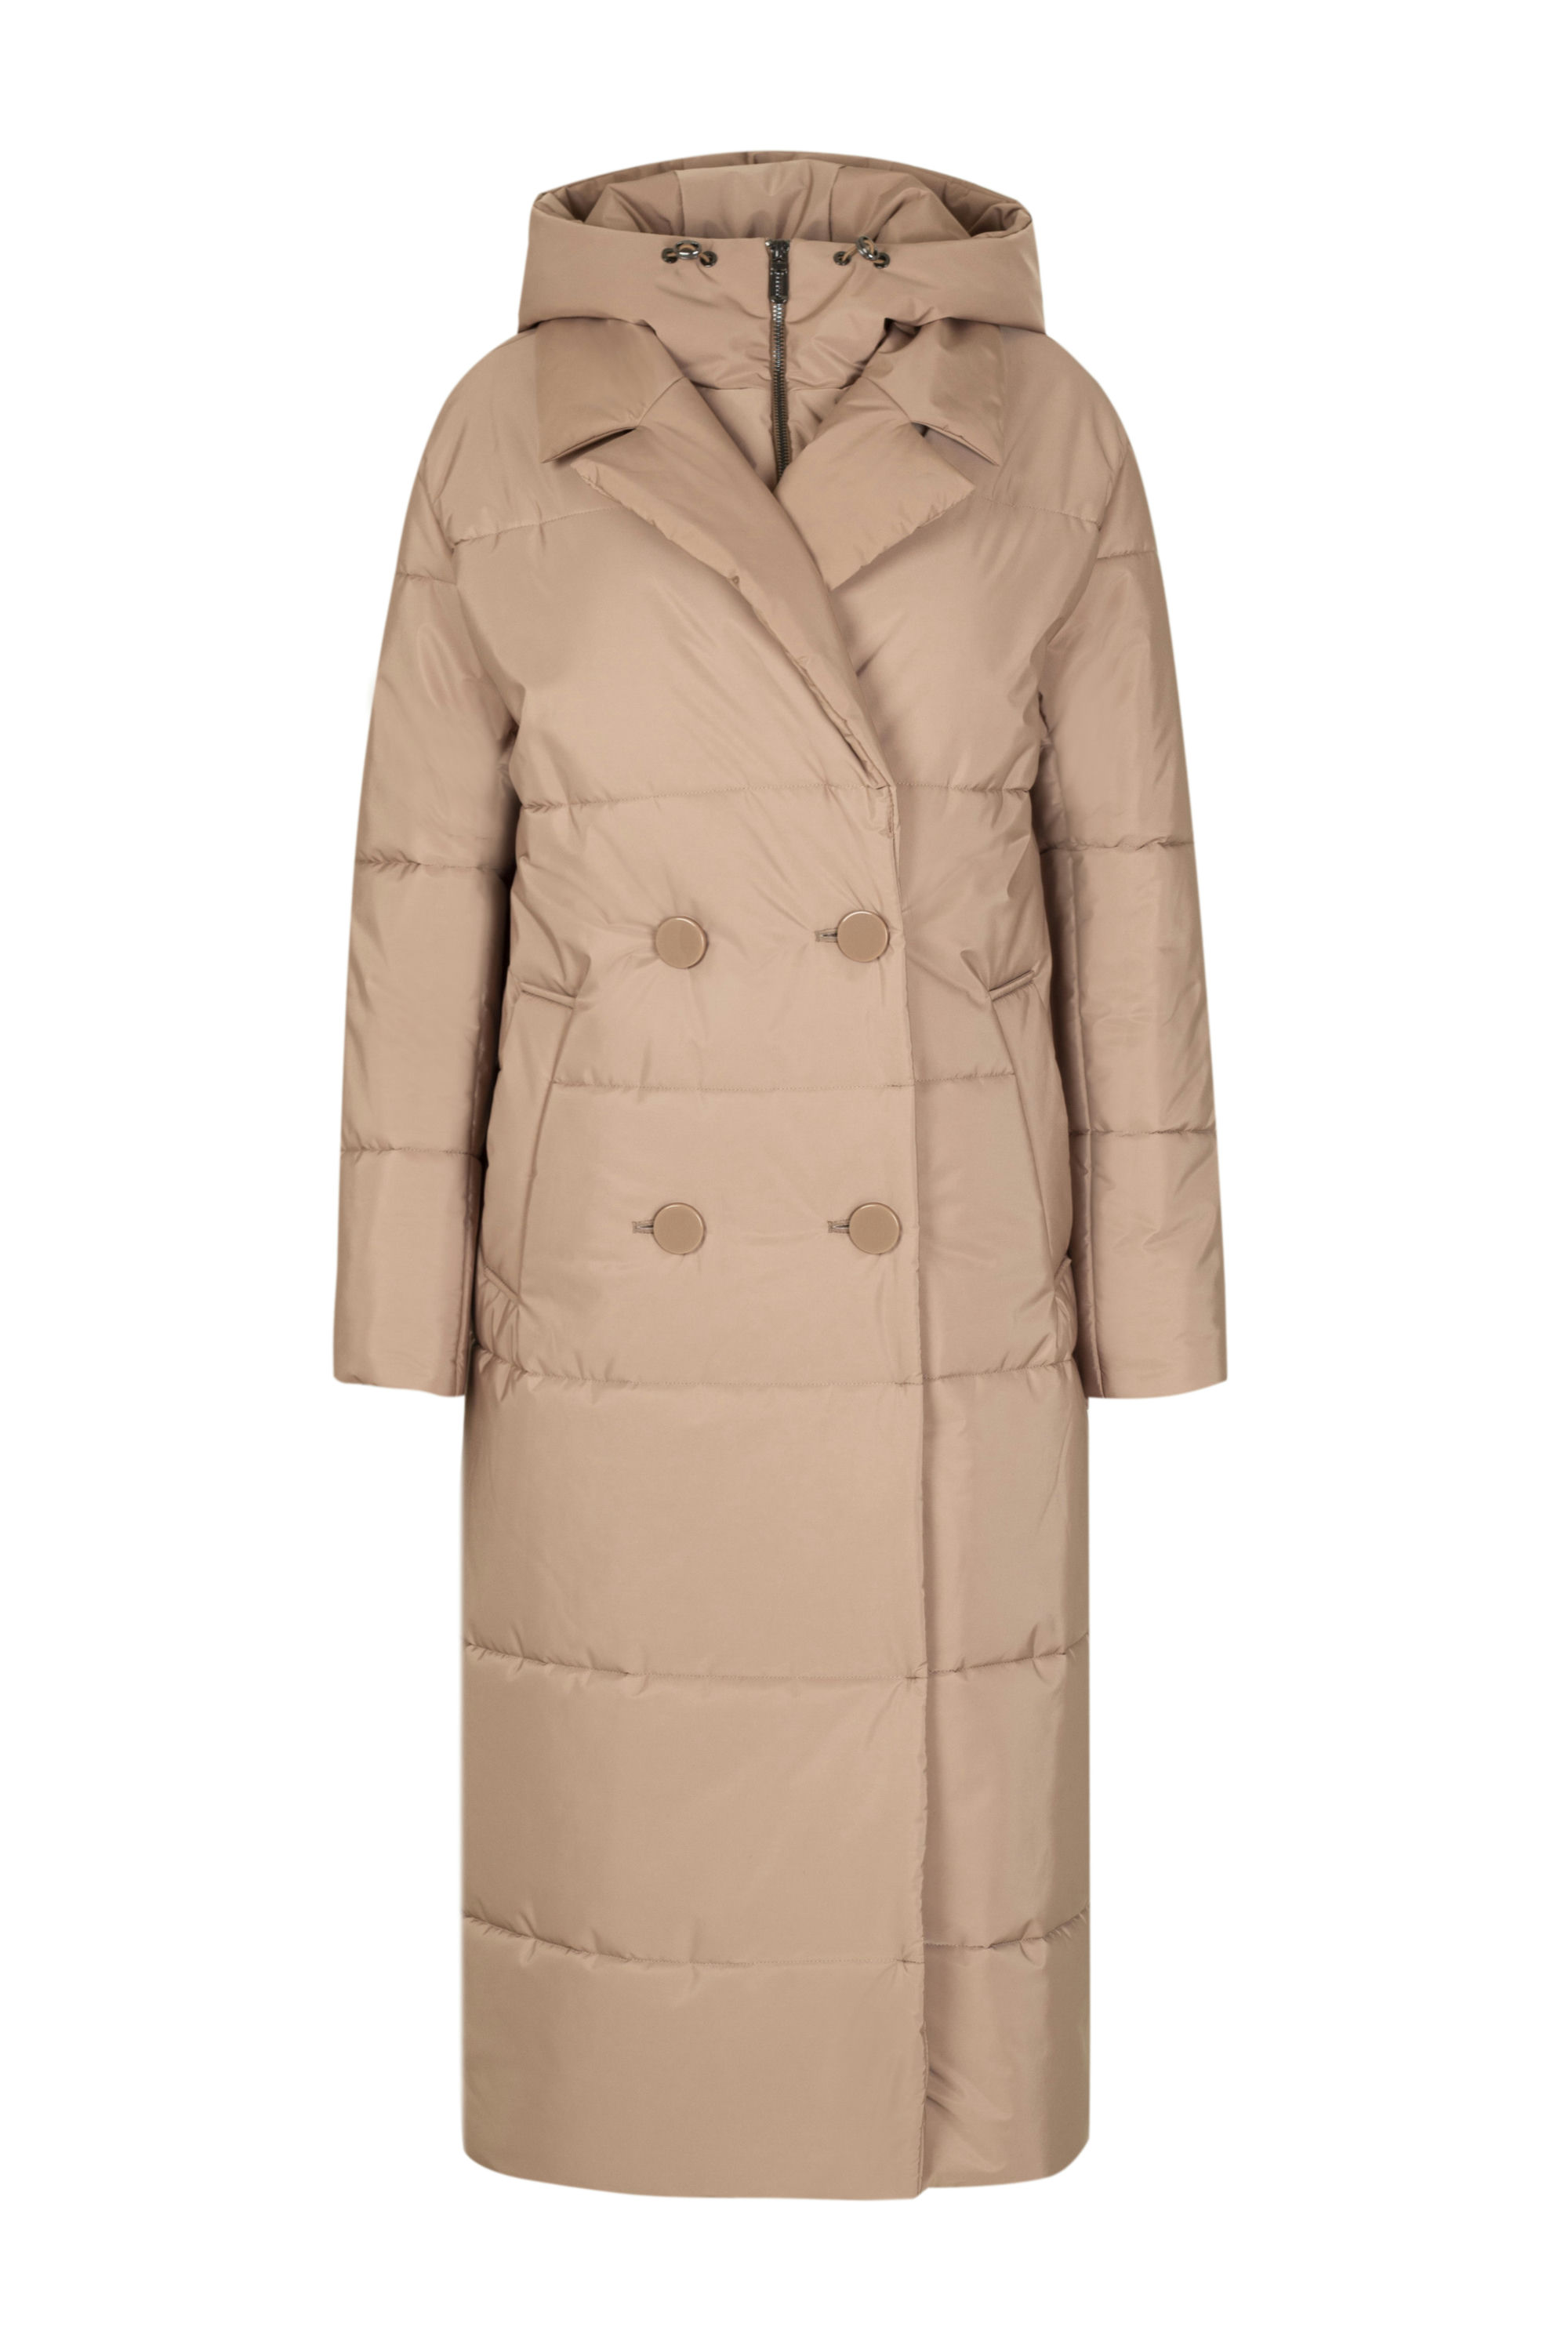 Пальто женское плащевое утепленное 5-12374-1. Фото 1.